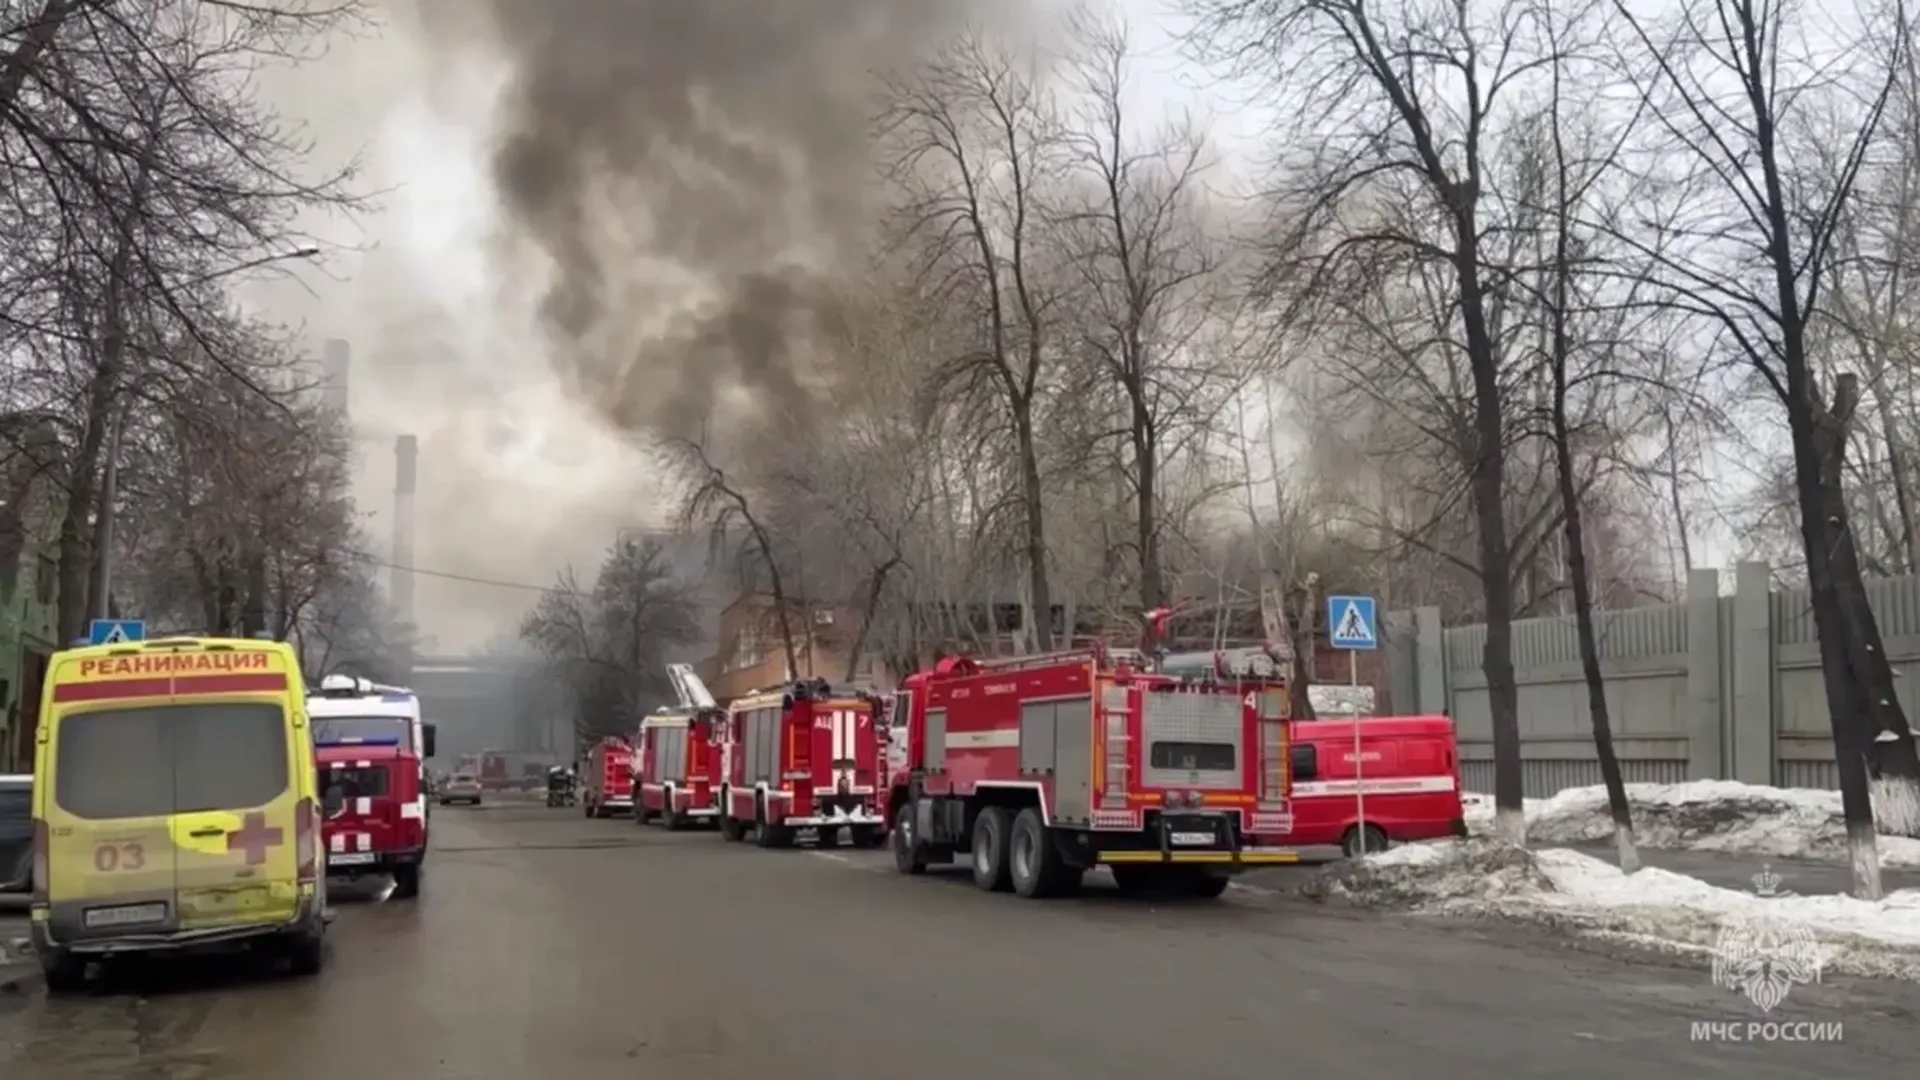 Площадь пожара в Екатеринбурге достигла 4,5 тысячи квадратных метров